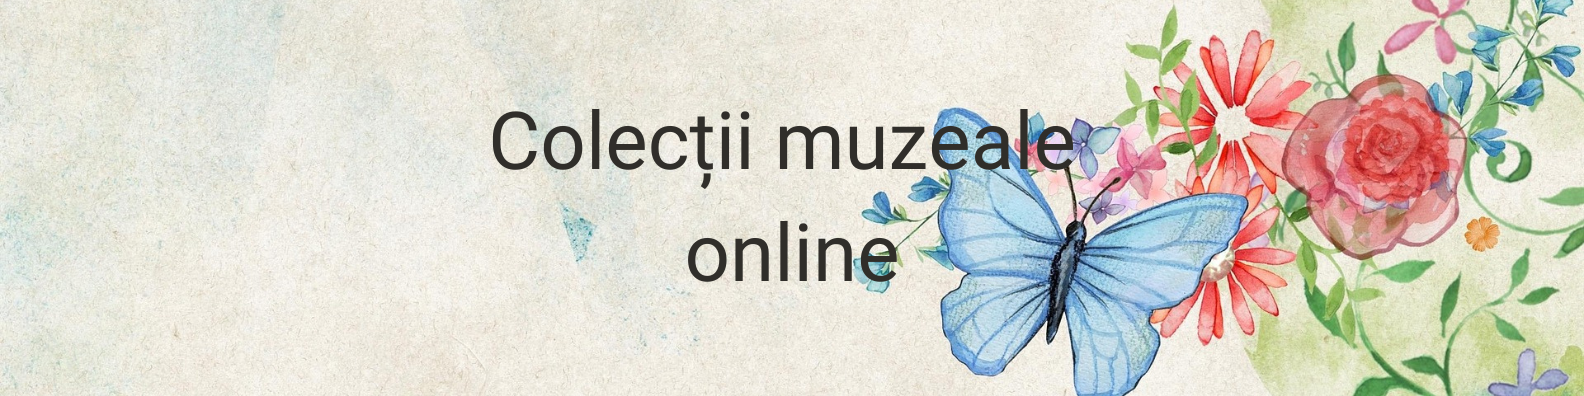 Colecții muzeale online